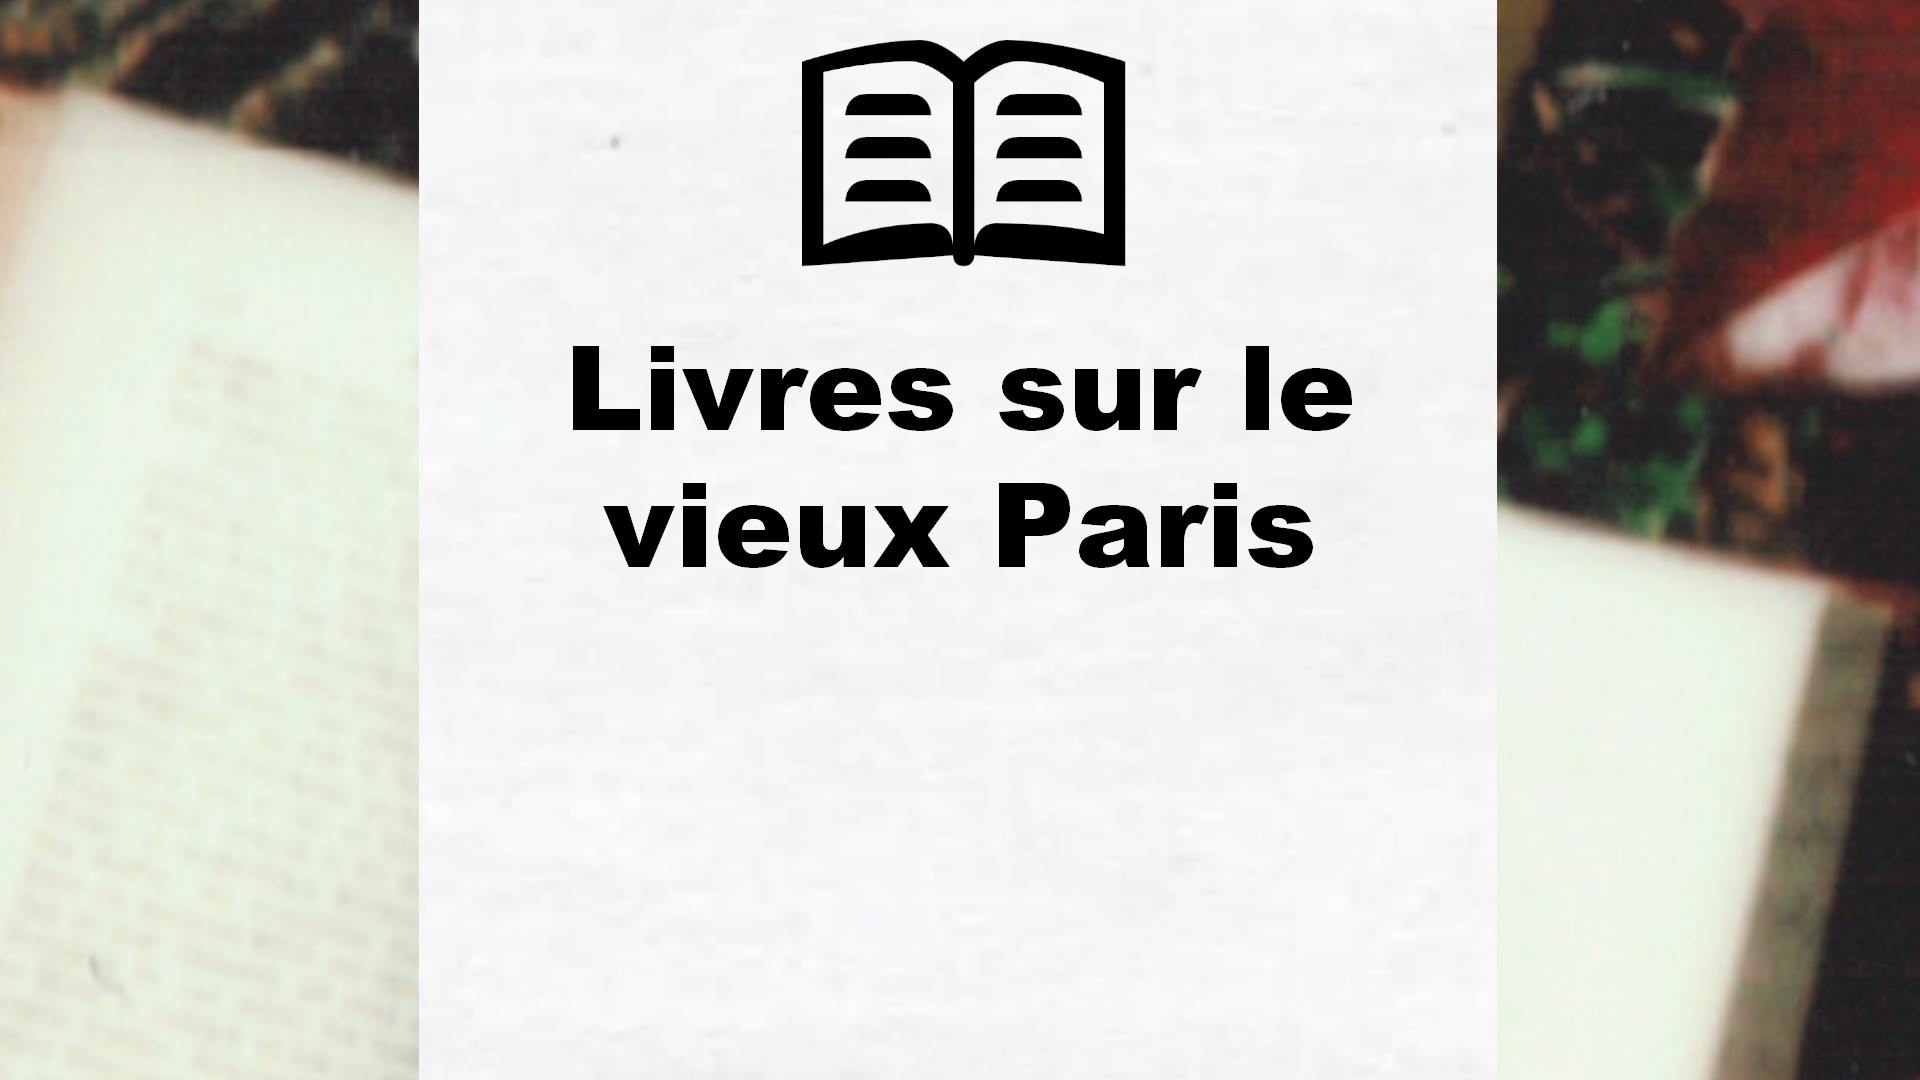 Livres sur le vieux Paris